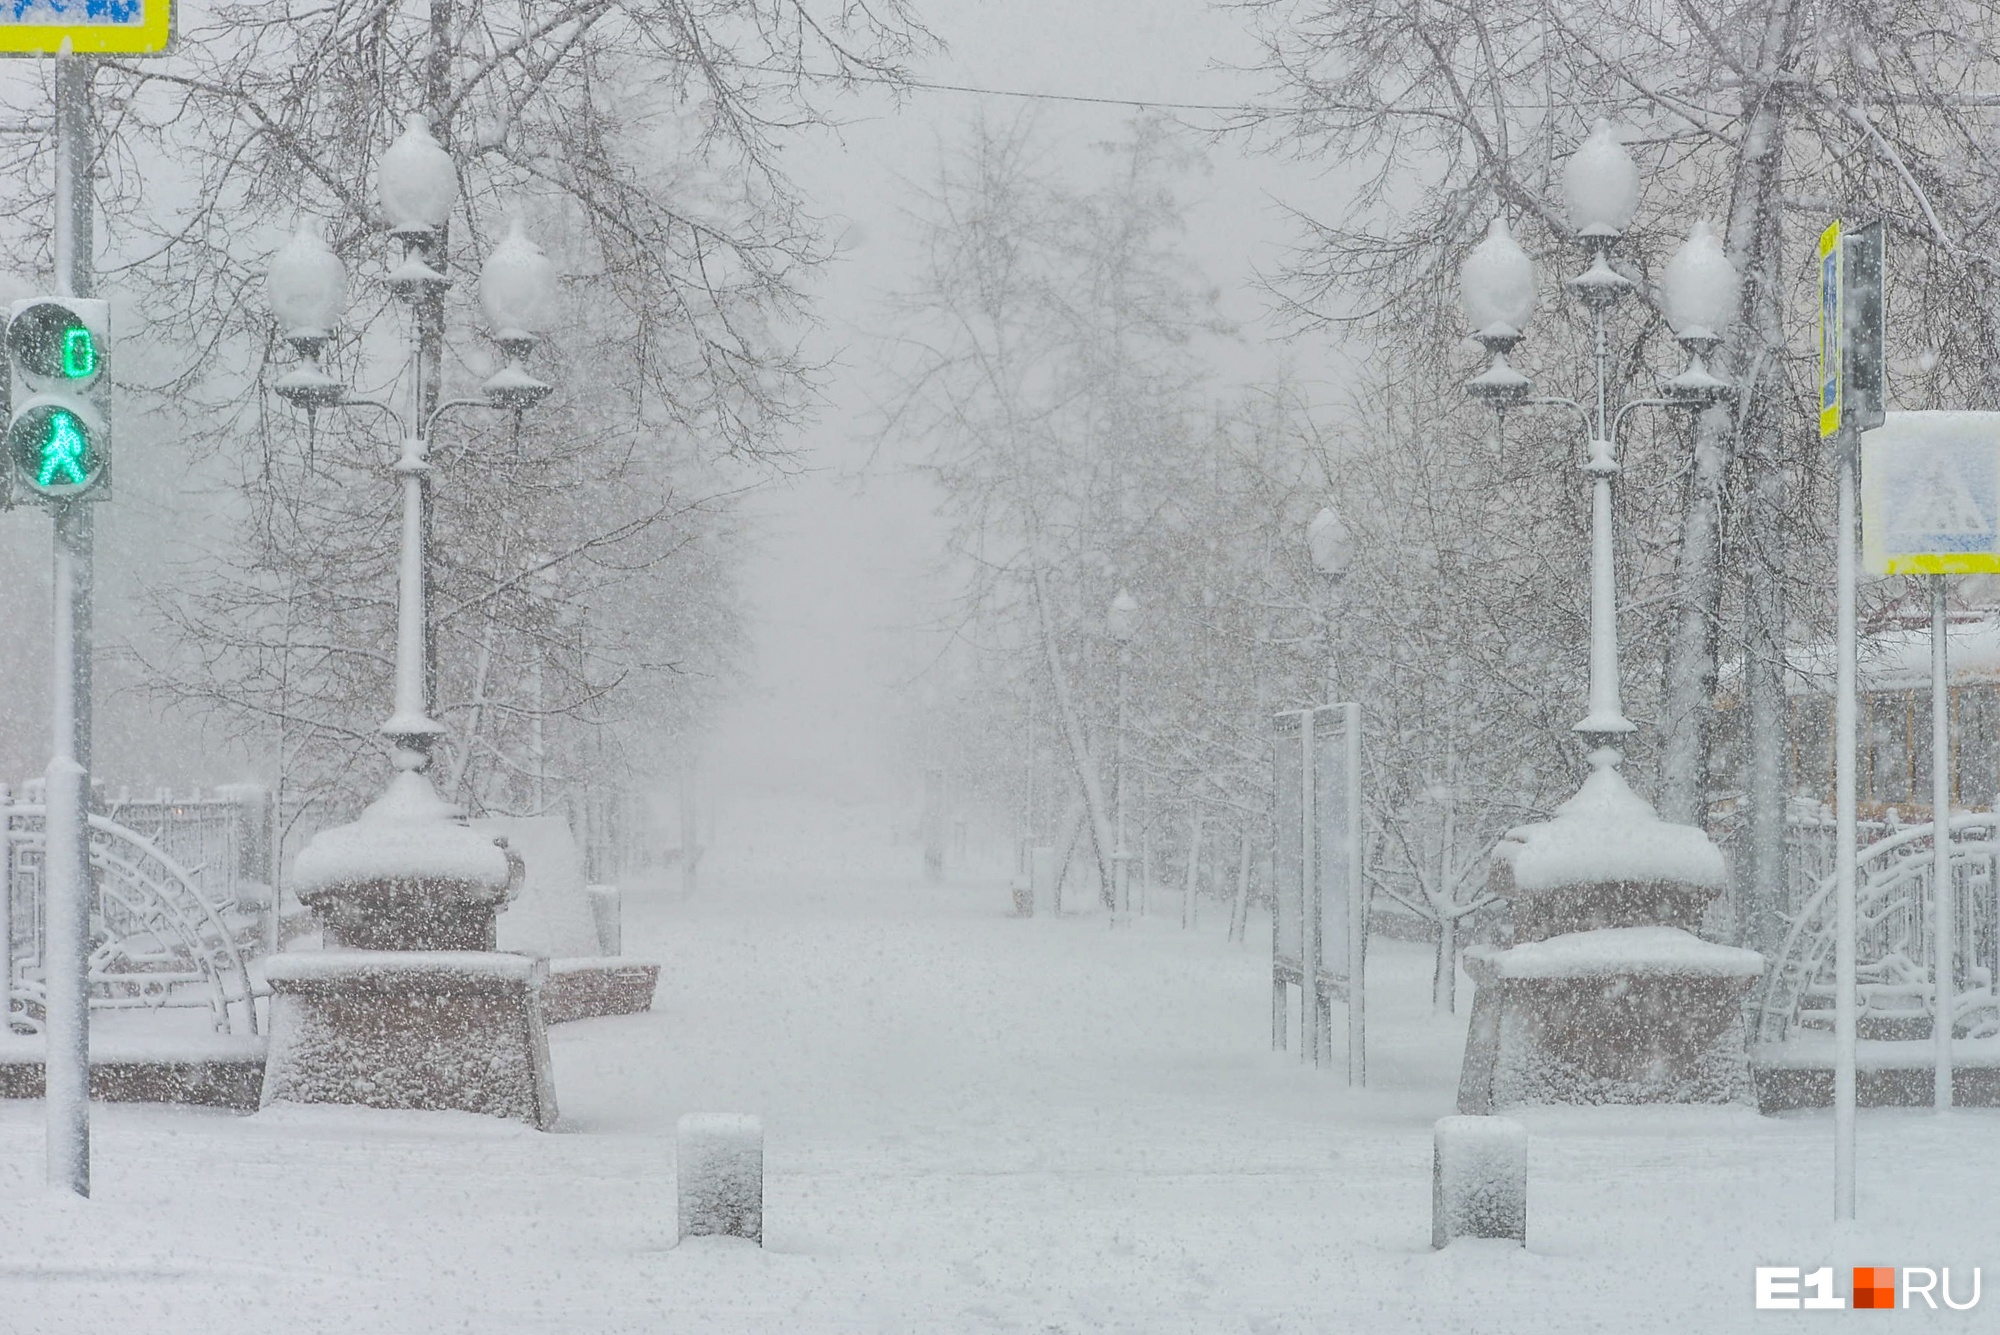 Екатеринбург накрыло сильным снегопадом. Когда он закончится?